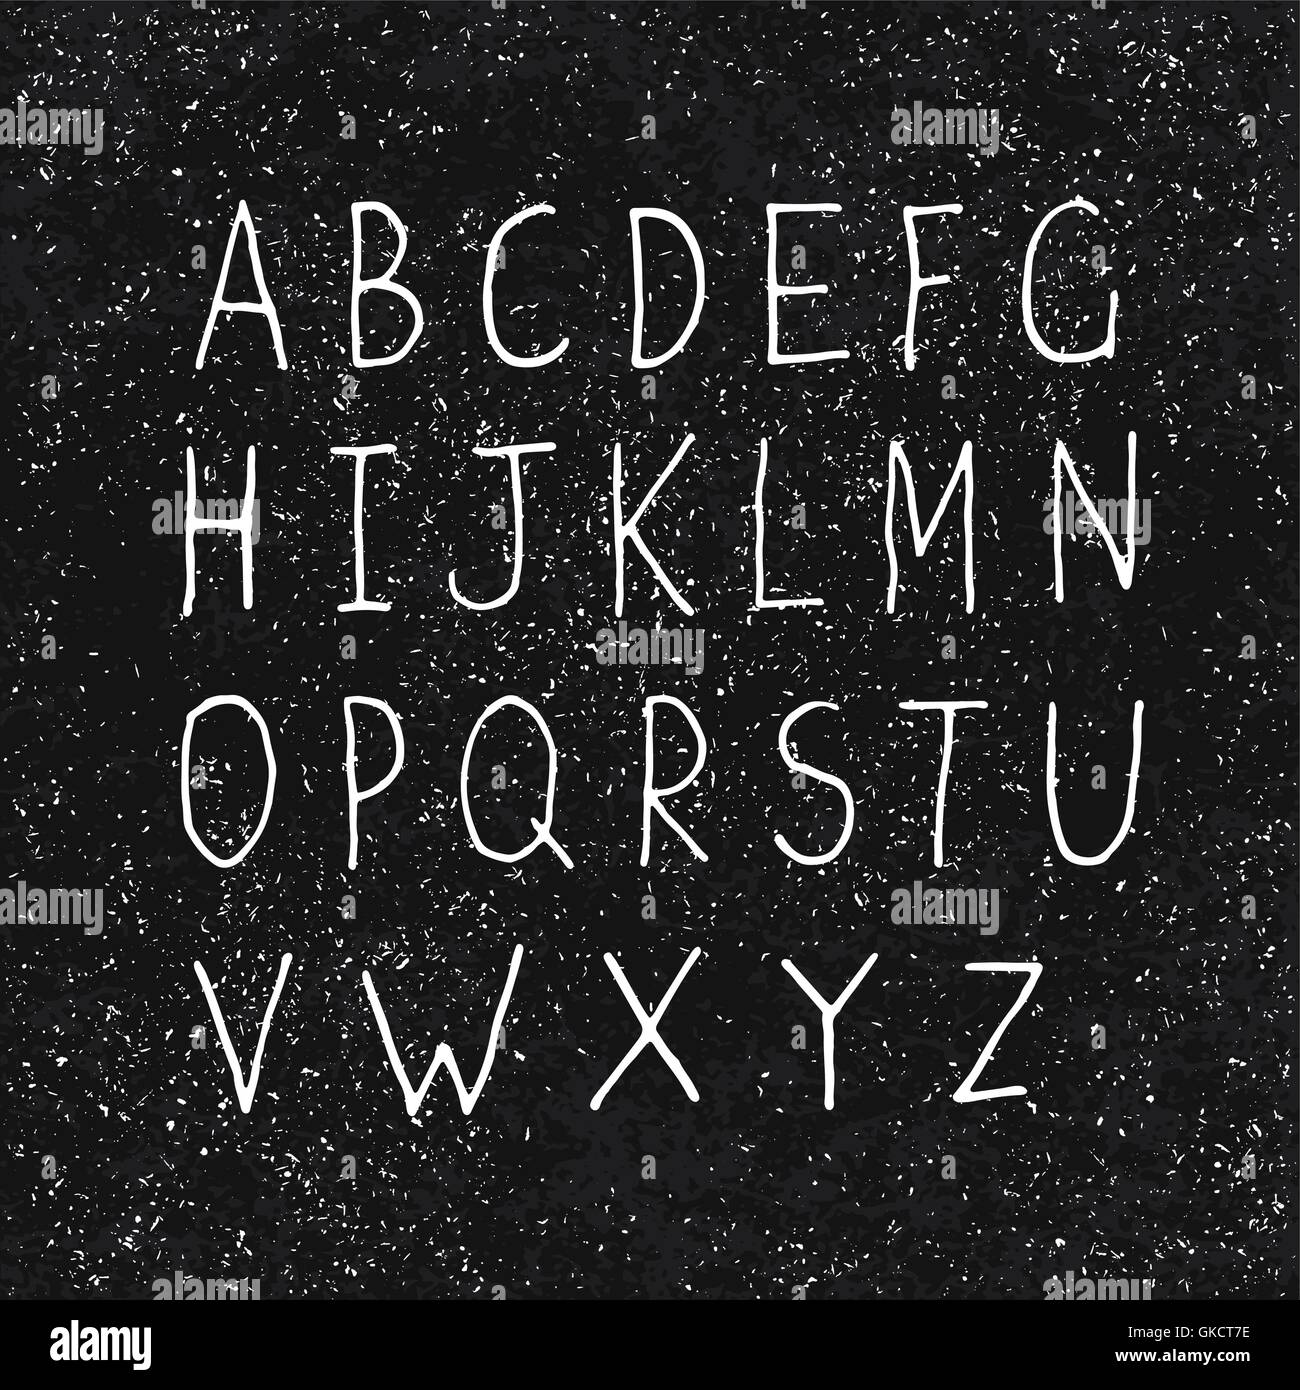 Disegnate a mano su alfabeto invecchiato Texture Blackboard Illustrazione Vettoriale